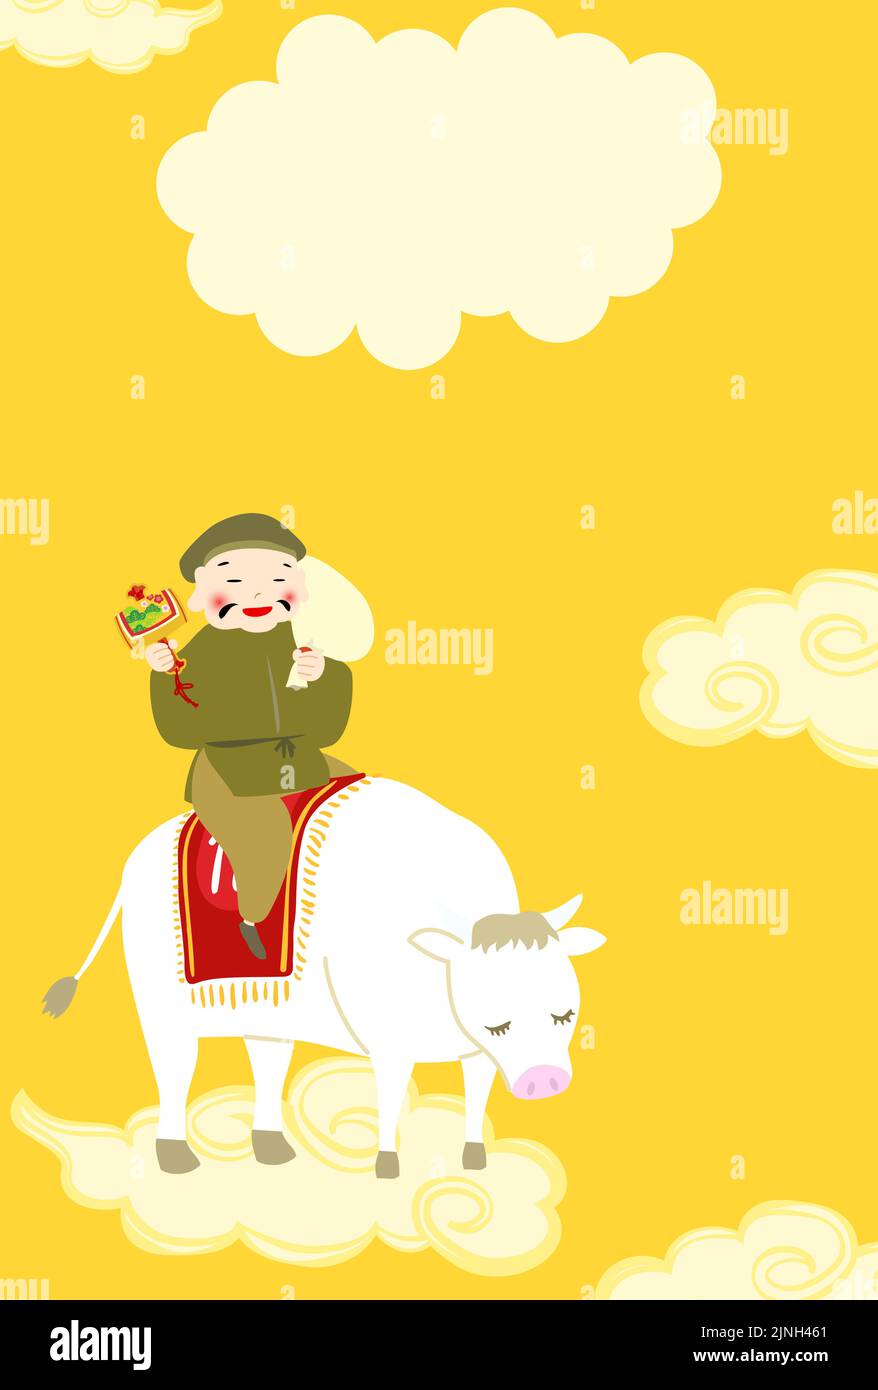 Neujahrskarte Illustration der sieben glücklichen Götter, Daikokuten auf einer weißen Kuh -Übersetzung: Glückliches Neues Jahr, vielen Dank für das letzte Jahr. Schön, yo zu treffen Stock Vektor